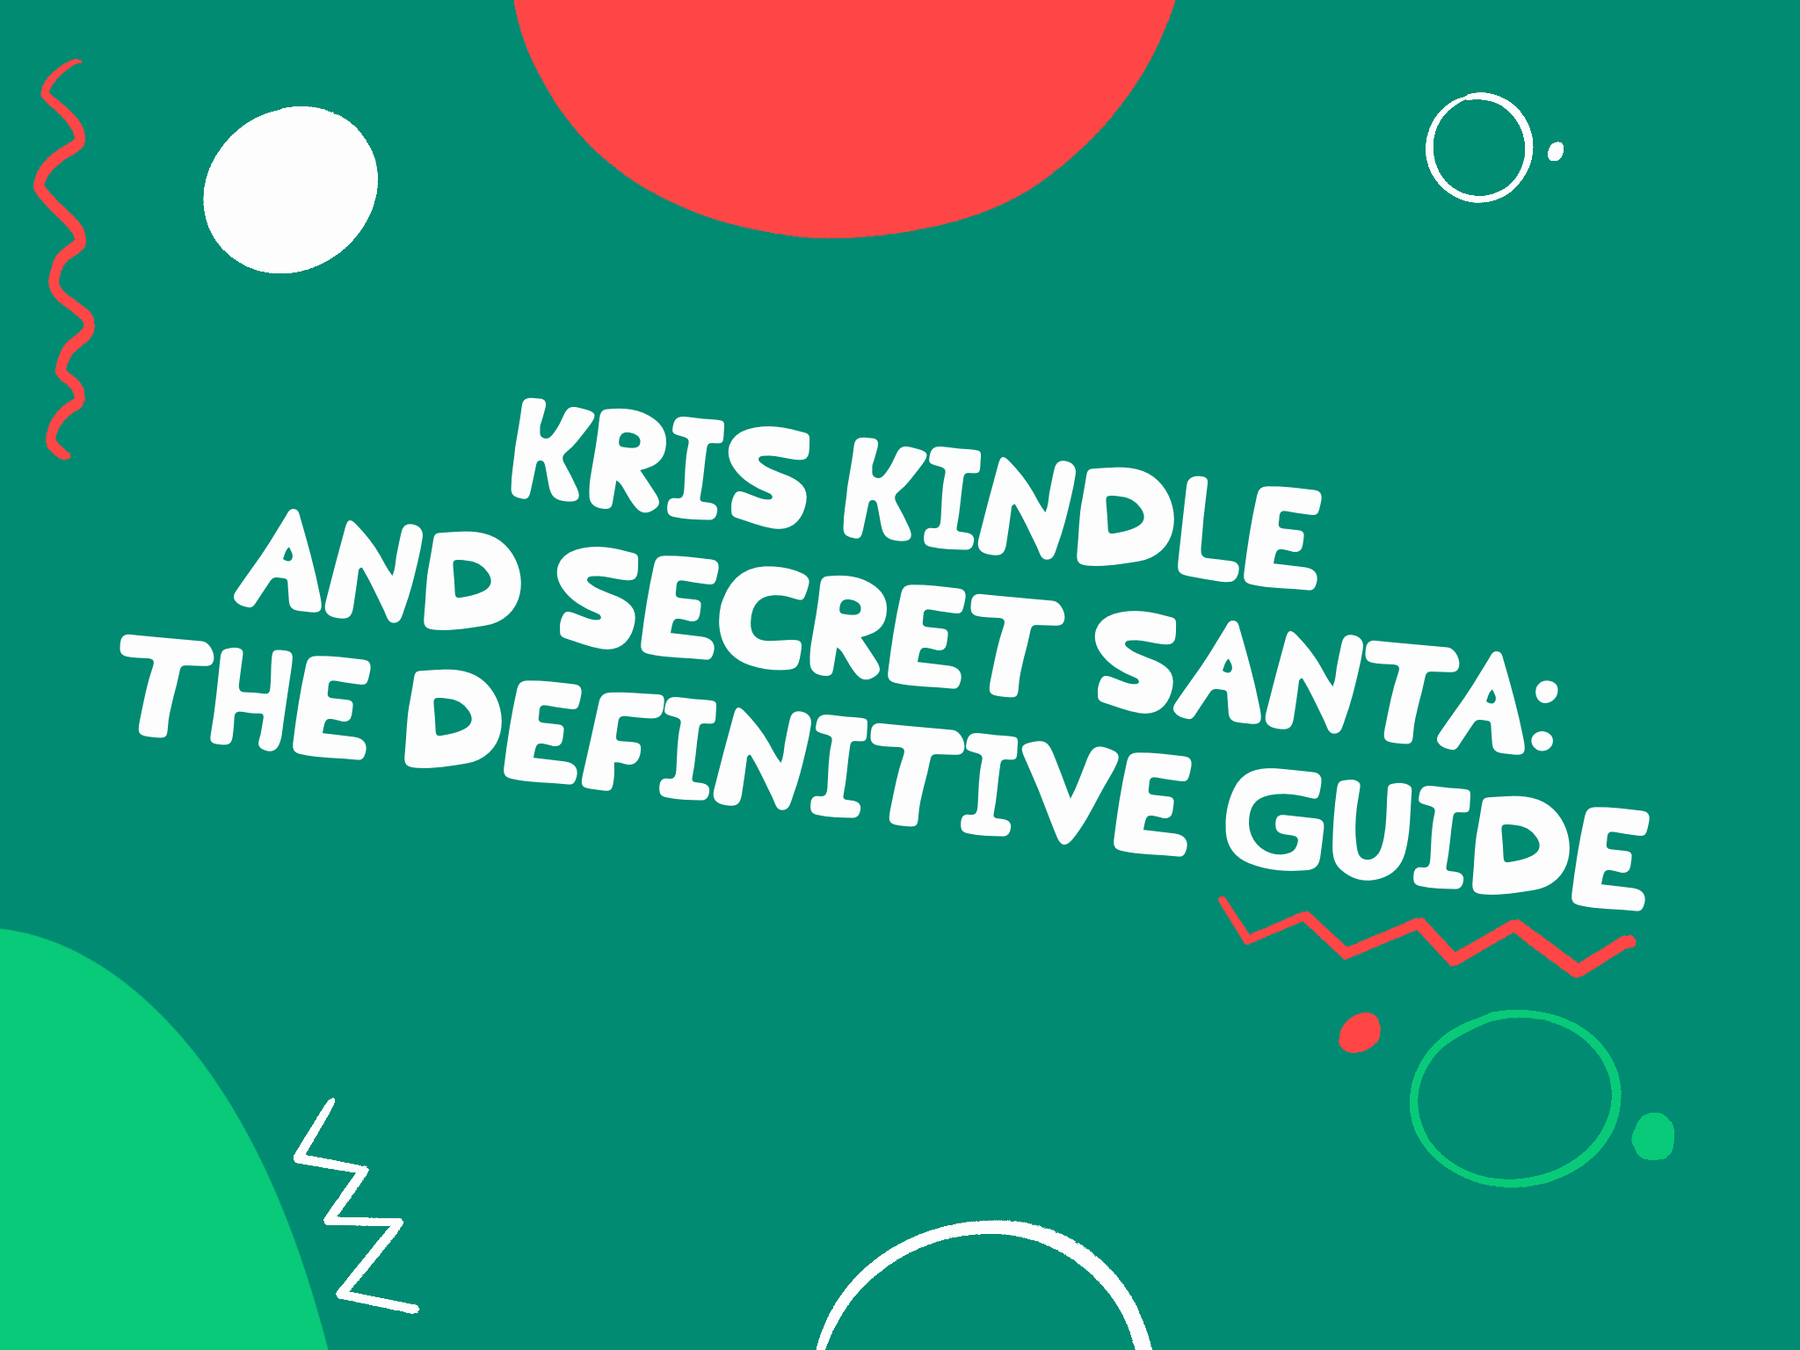 Kris Kindle & Secret Santa: The definitive Guide